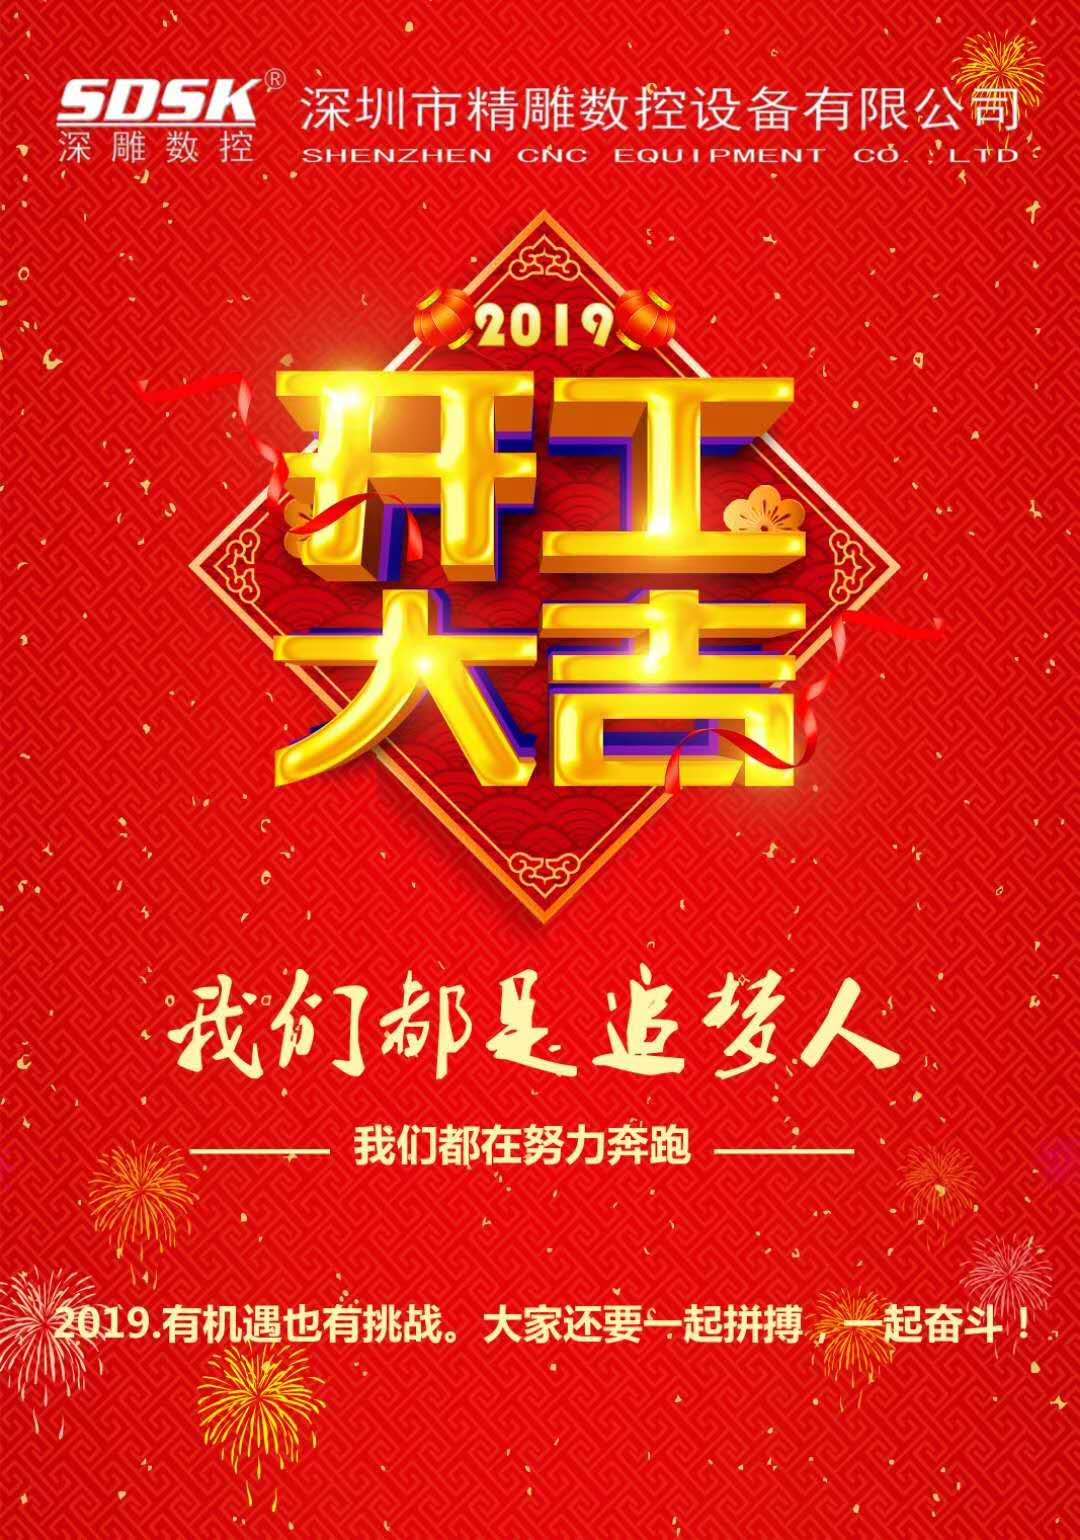 Shenzhen Jingdiao Kaigong University brings good luck to the new year